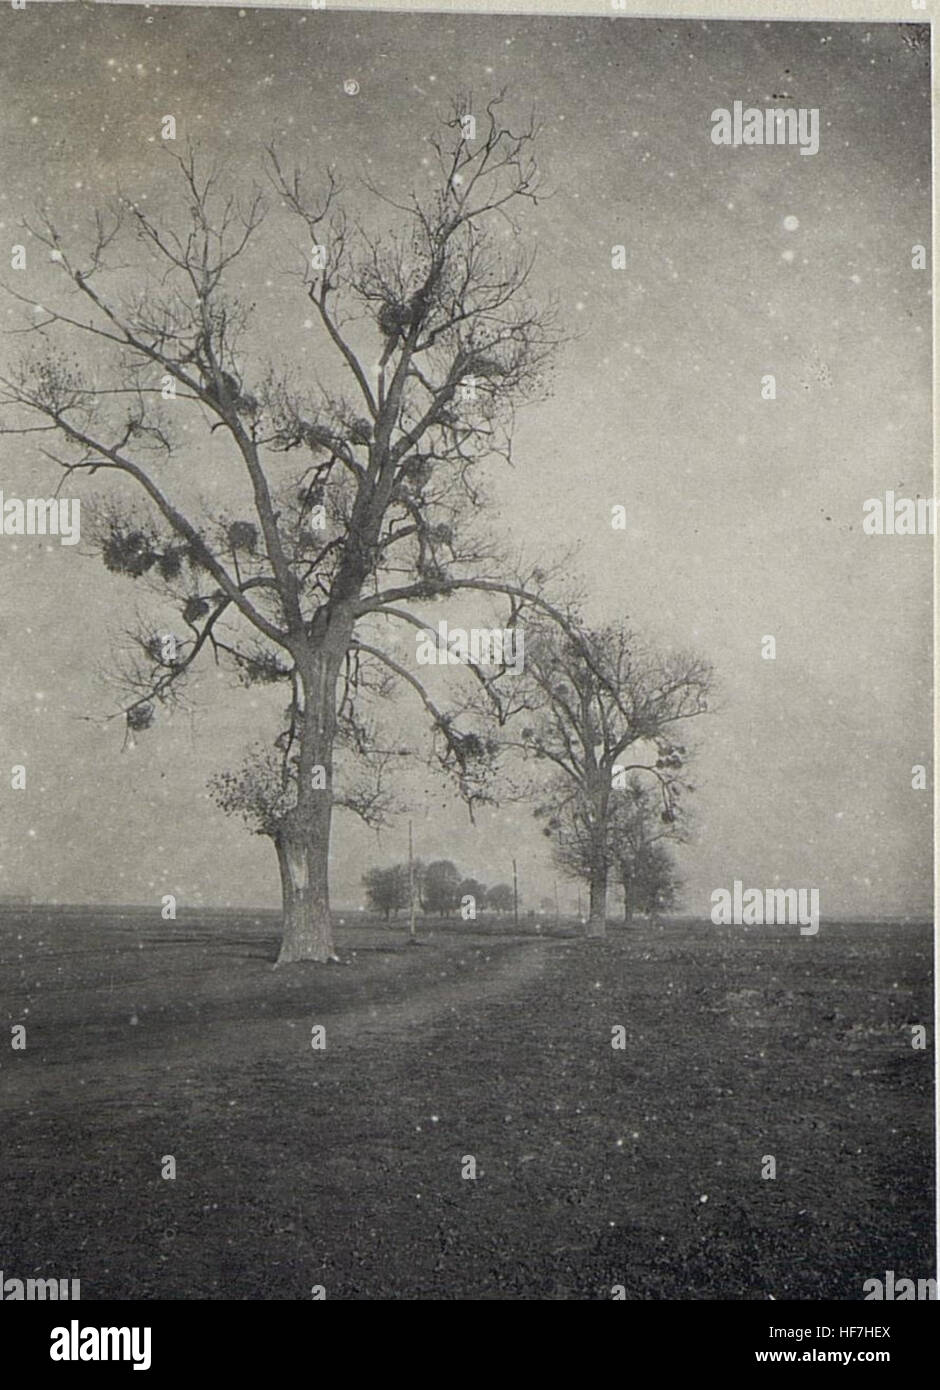 Baum am Wege Luck-Zydyczyn. 15690817) Foto Stock